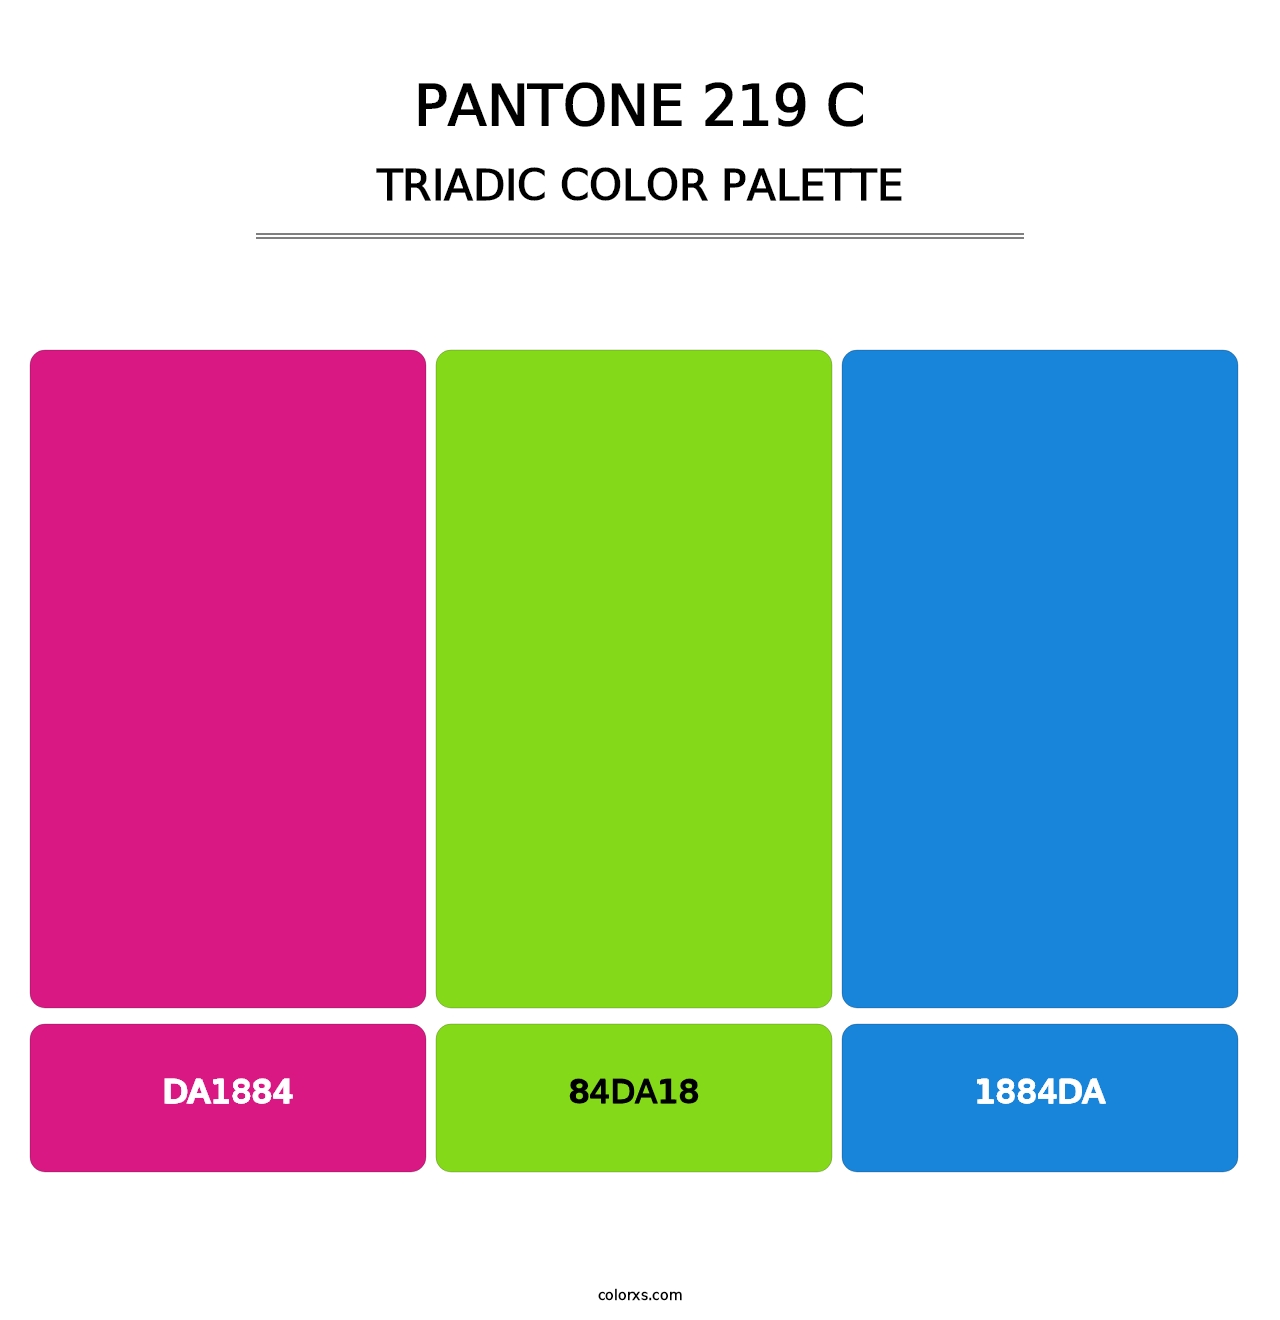 PANTONE 219 C - Triadic Color Palette